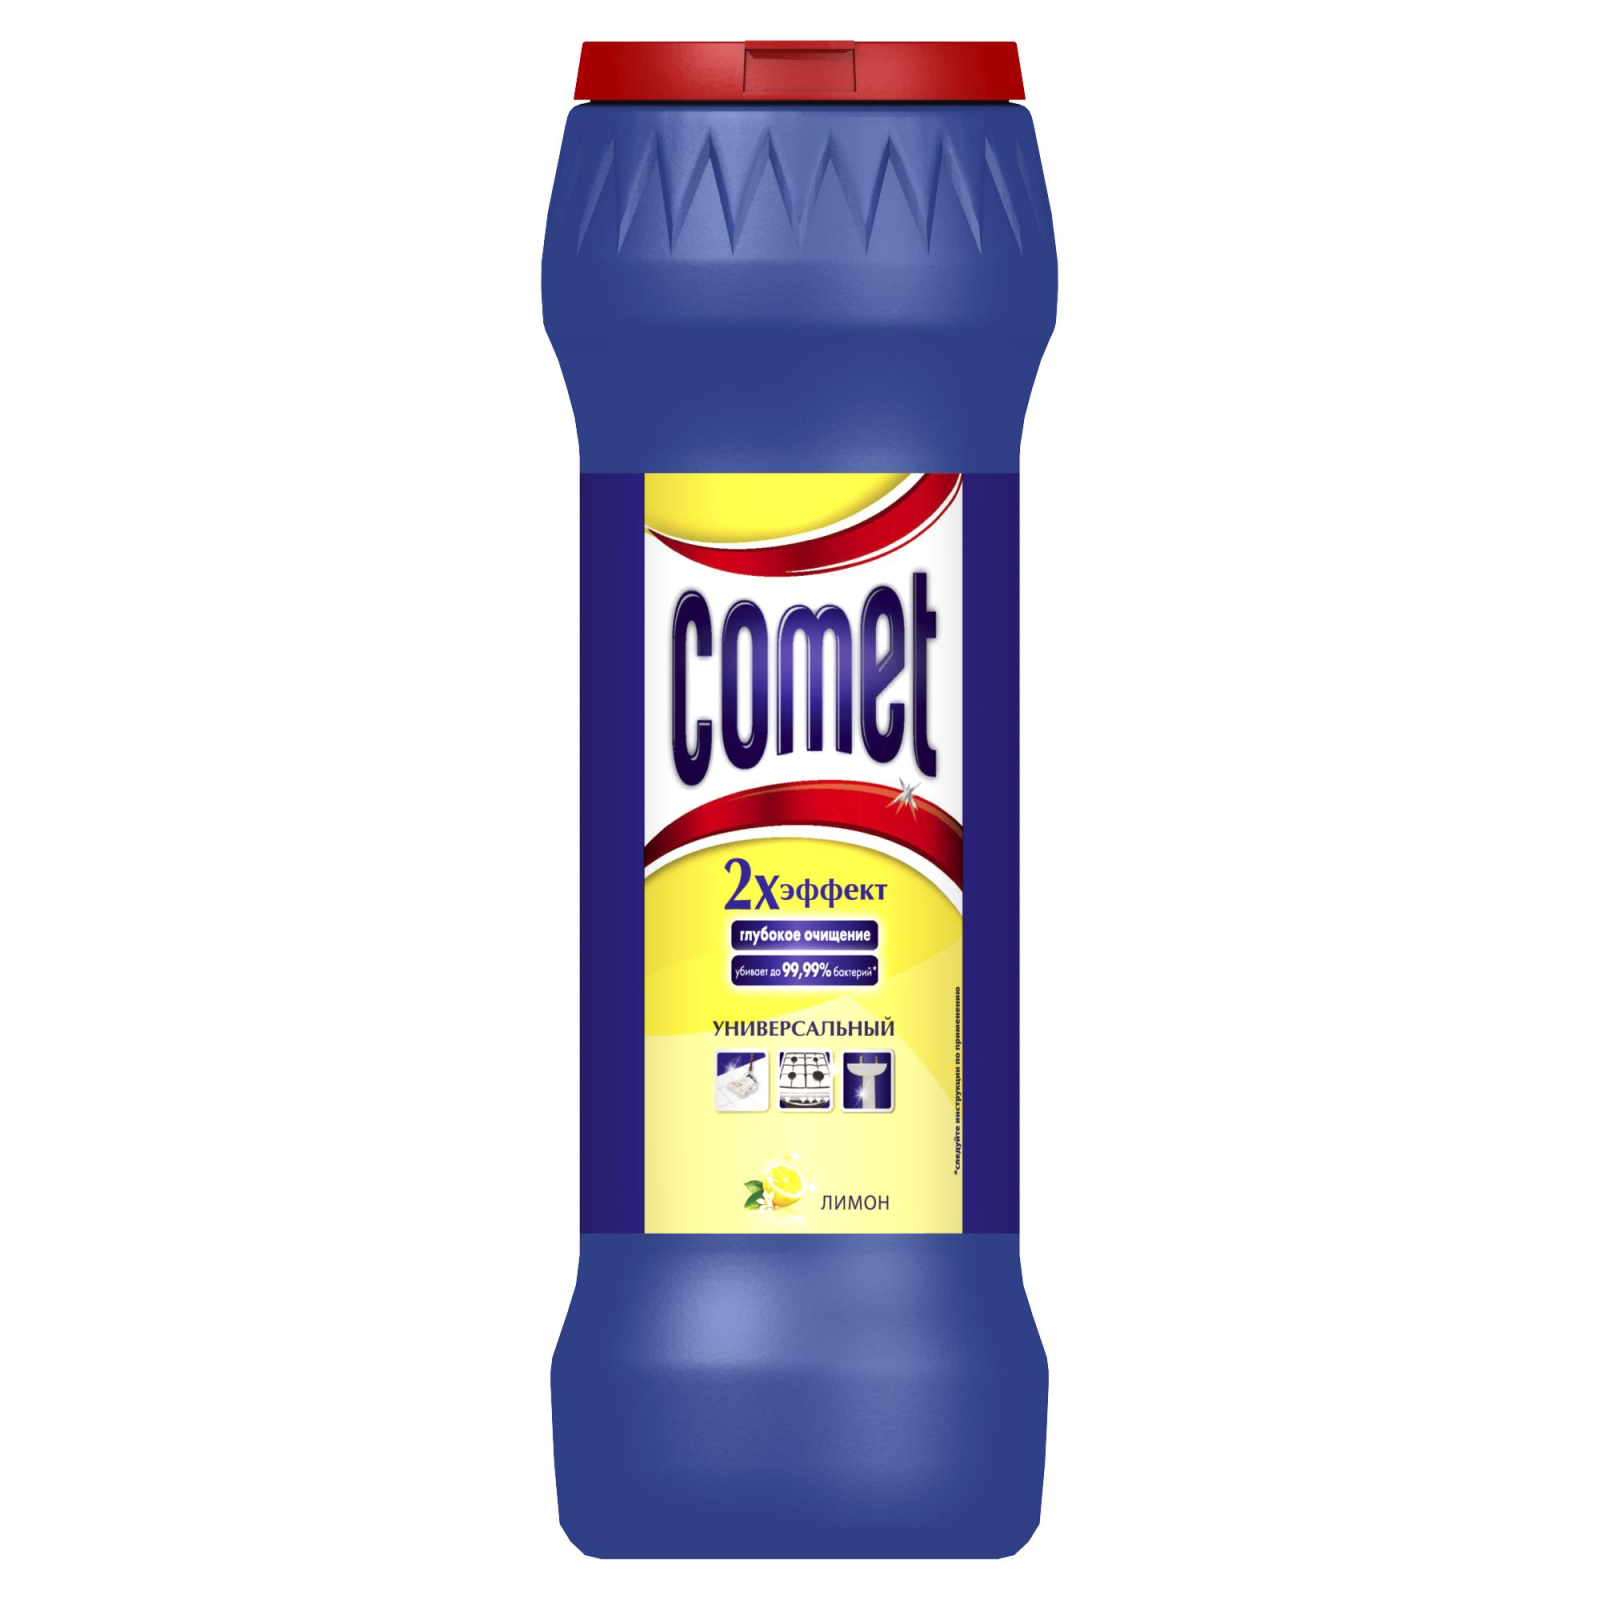 Порошок для чистки кухни Comet Лимон с хлоринолом 475 г (5410076183807)